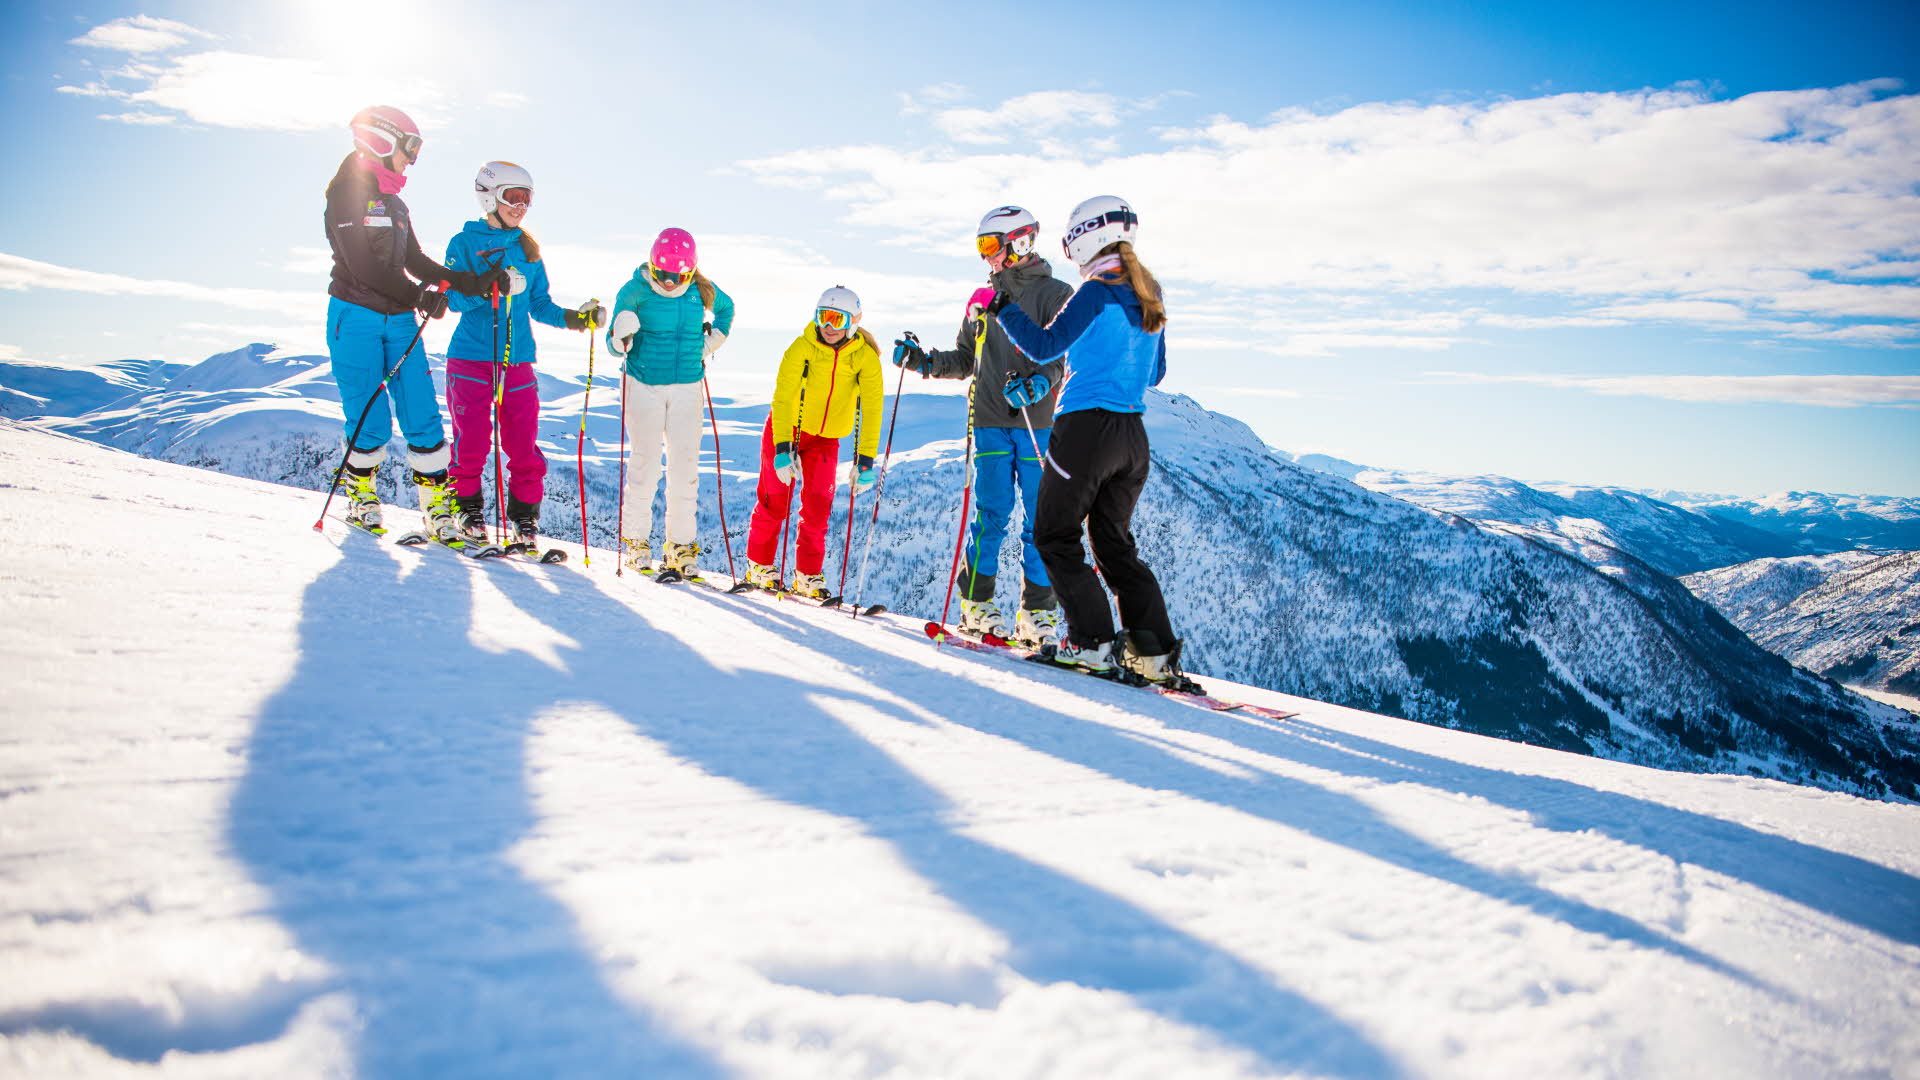 6 Personen in Alpinski-Ausrüstung stehen an einem klaren, sonnigen Tag an den Skipisten des Skiresorts Myrkdalen, mit Blick auf die Winterlandschaft